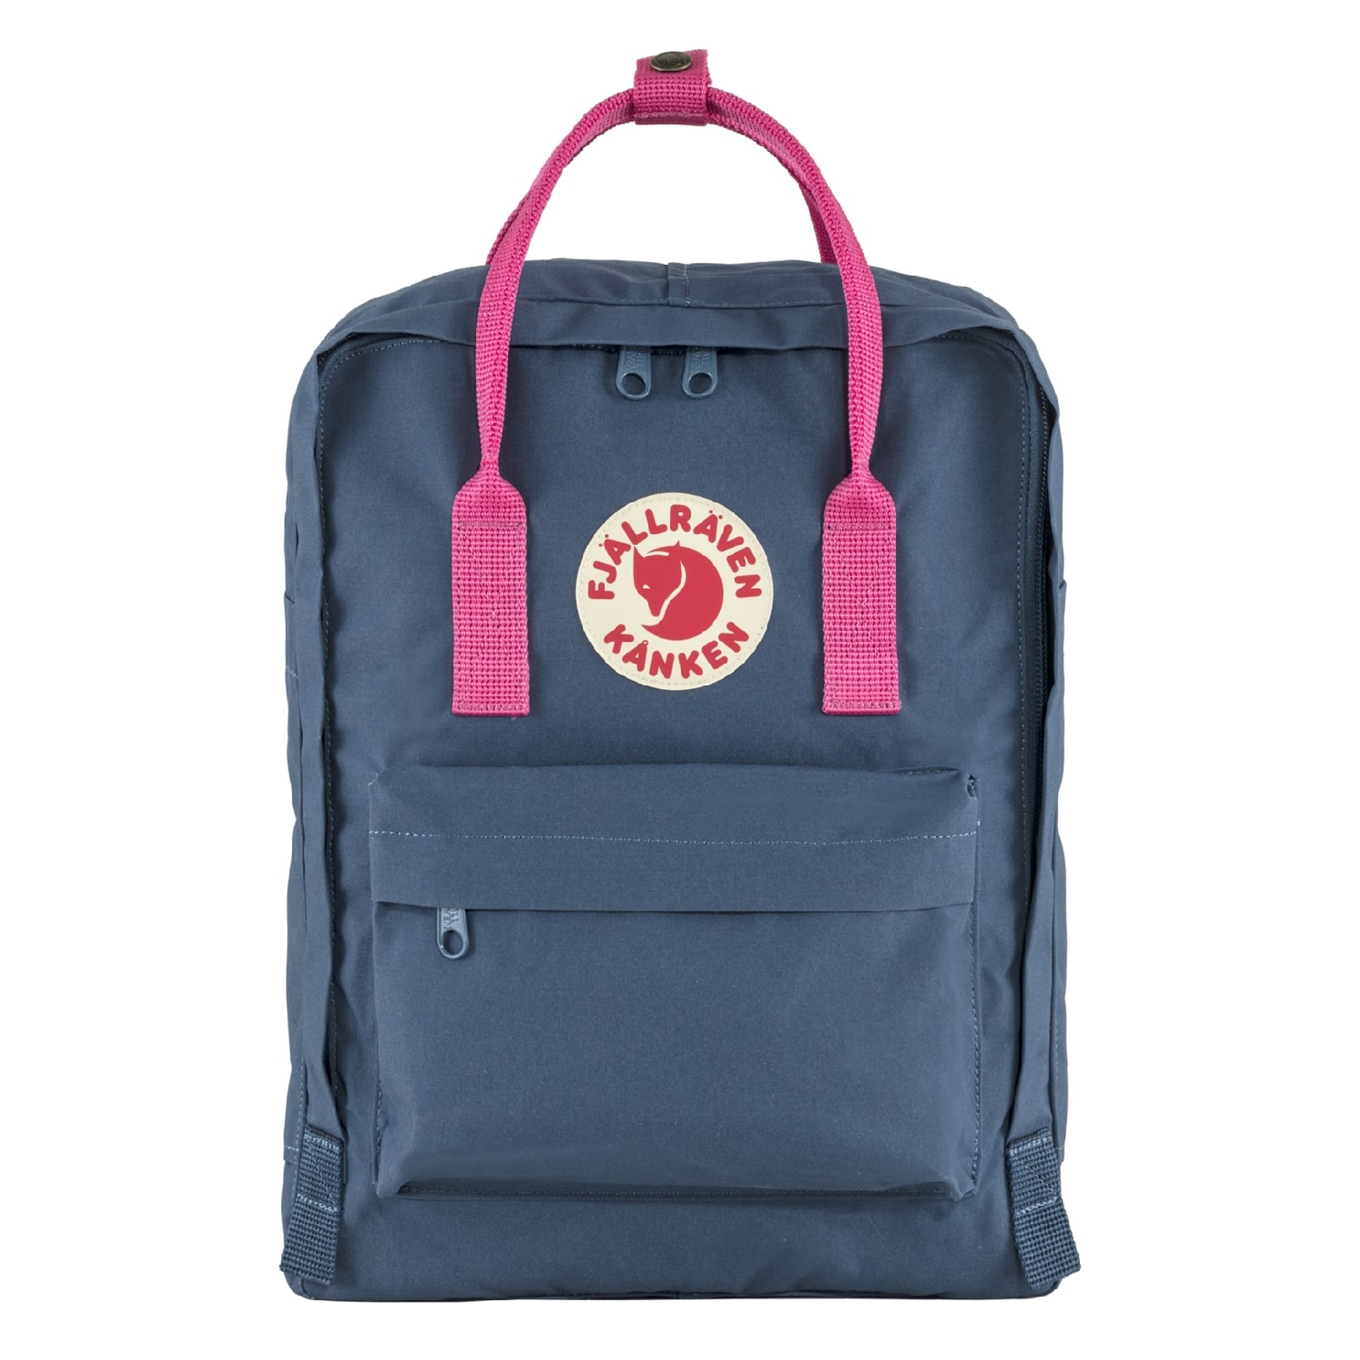 Fjallraven Kanken Rugzak royal blue/flamingo pink backpack